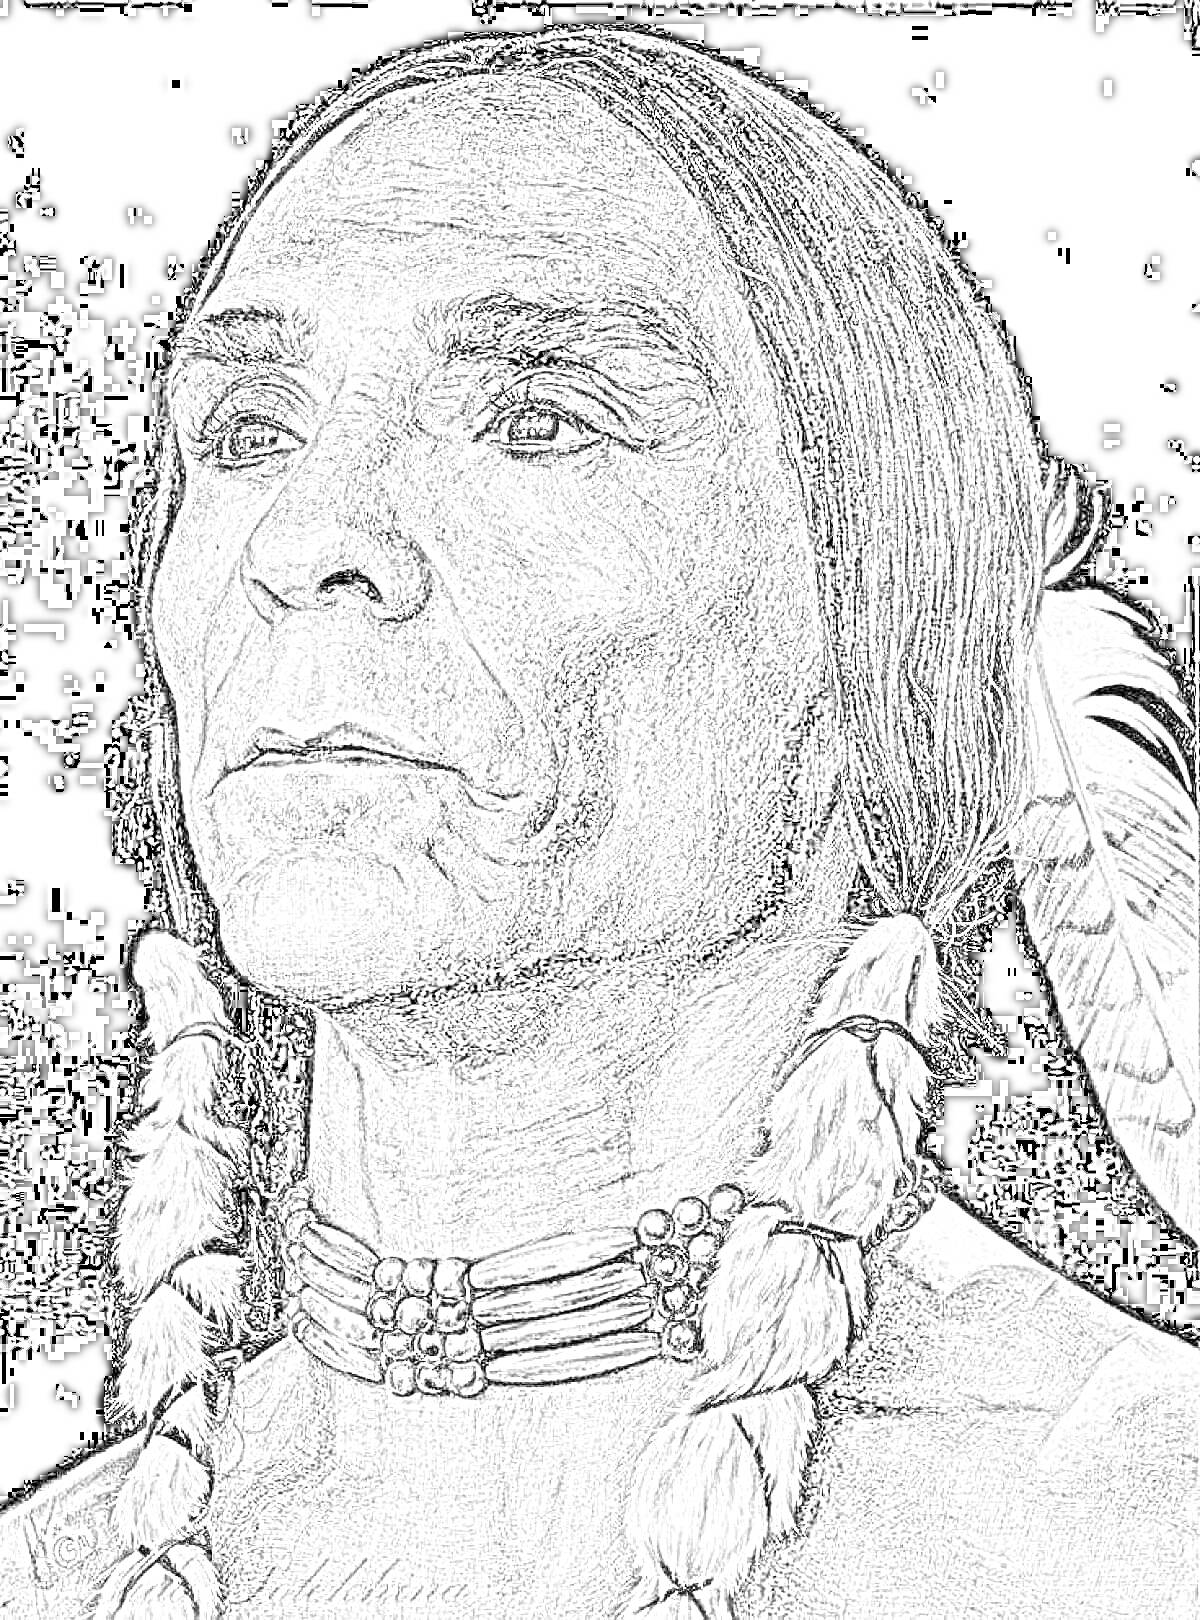 Портрет индейца с пером в волосах, ожерельем и косами